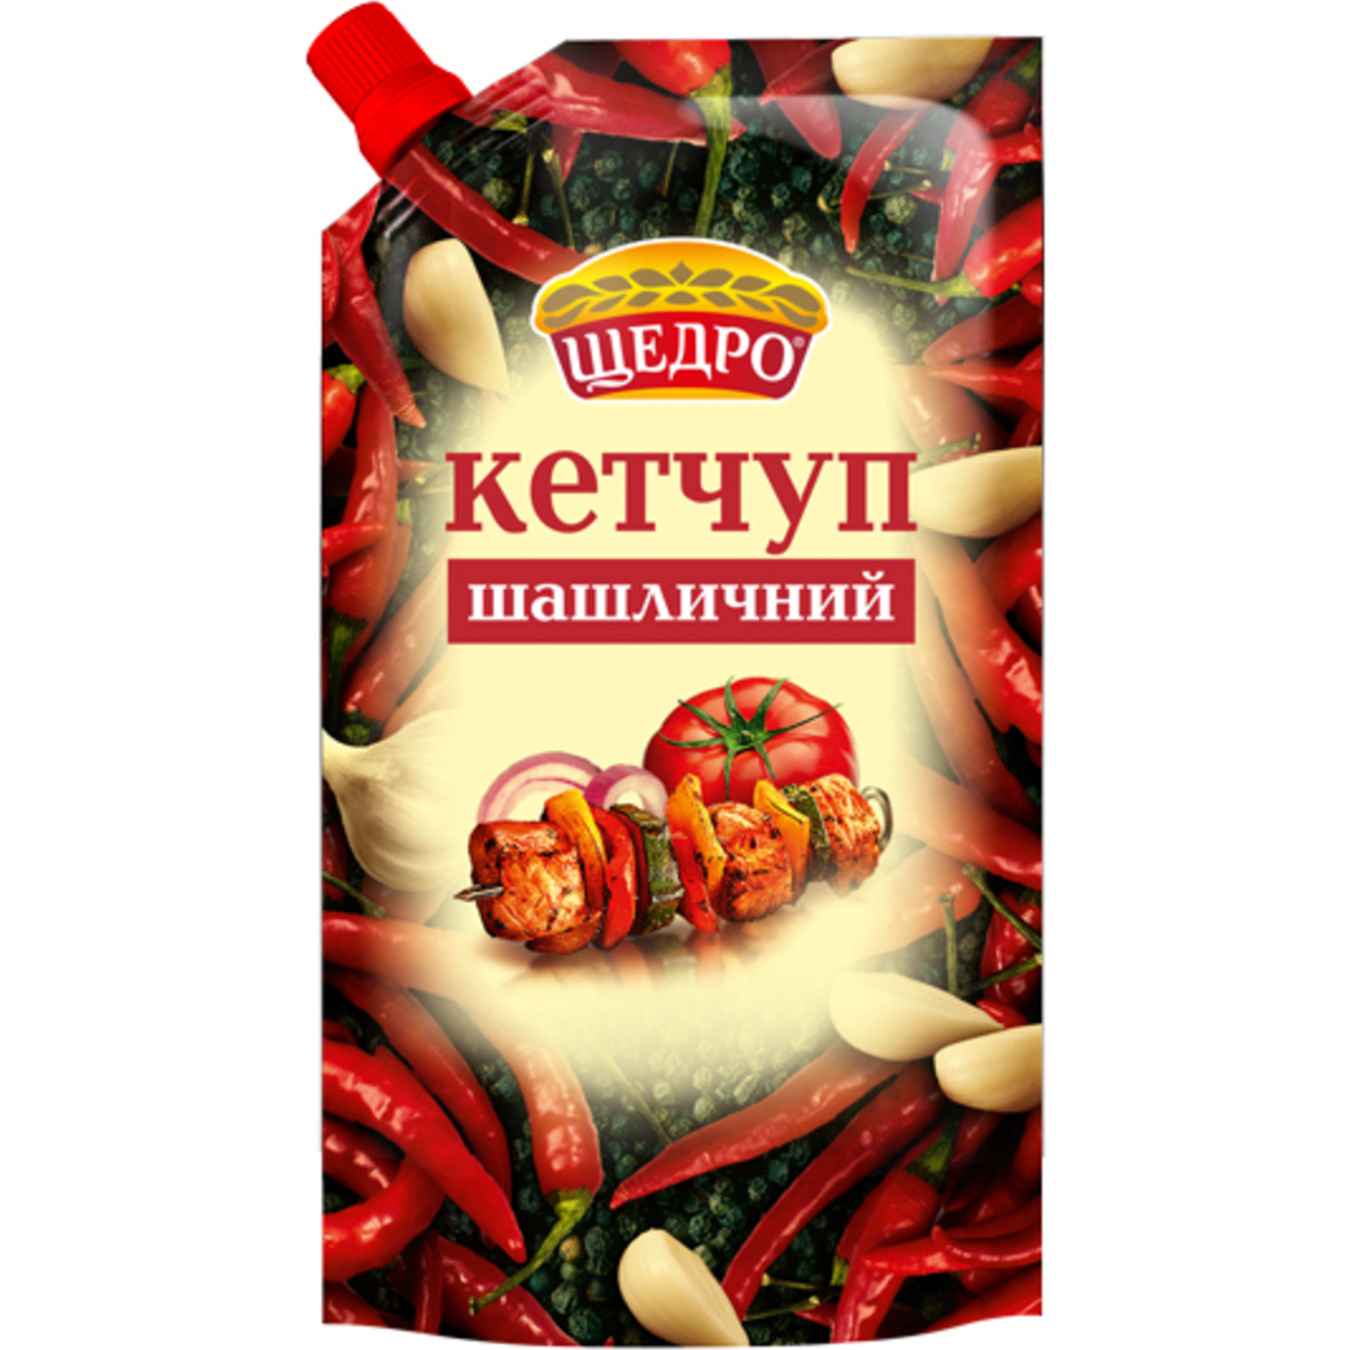 Schedro for kebab ketchup 250g